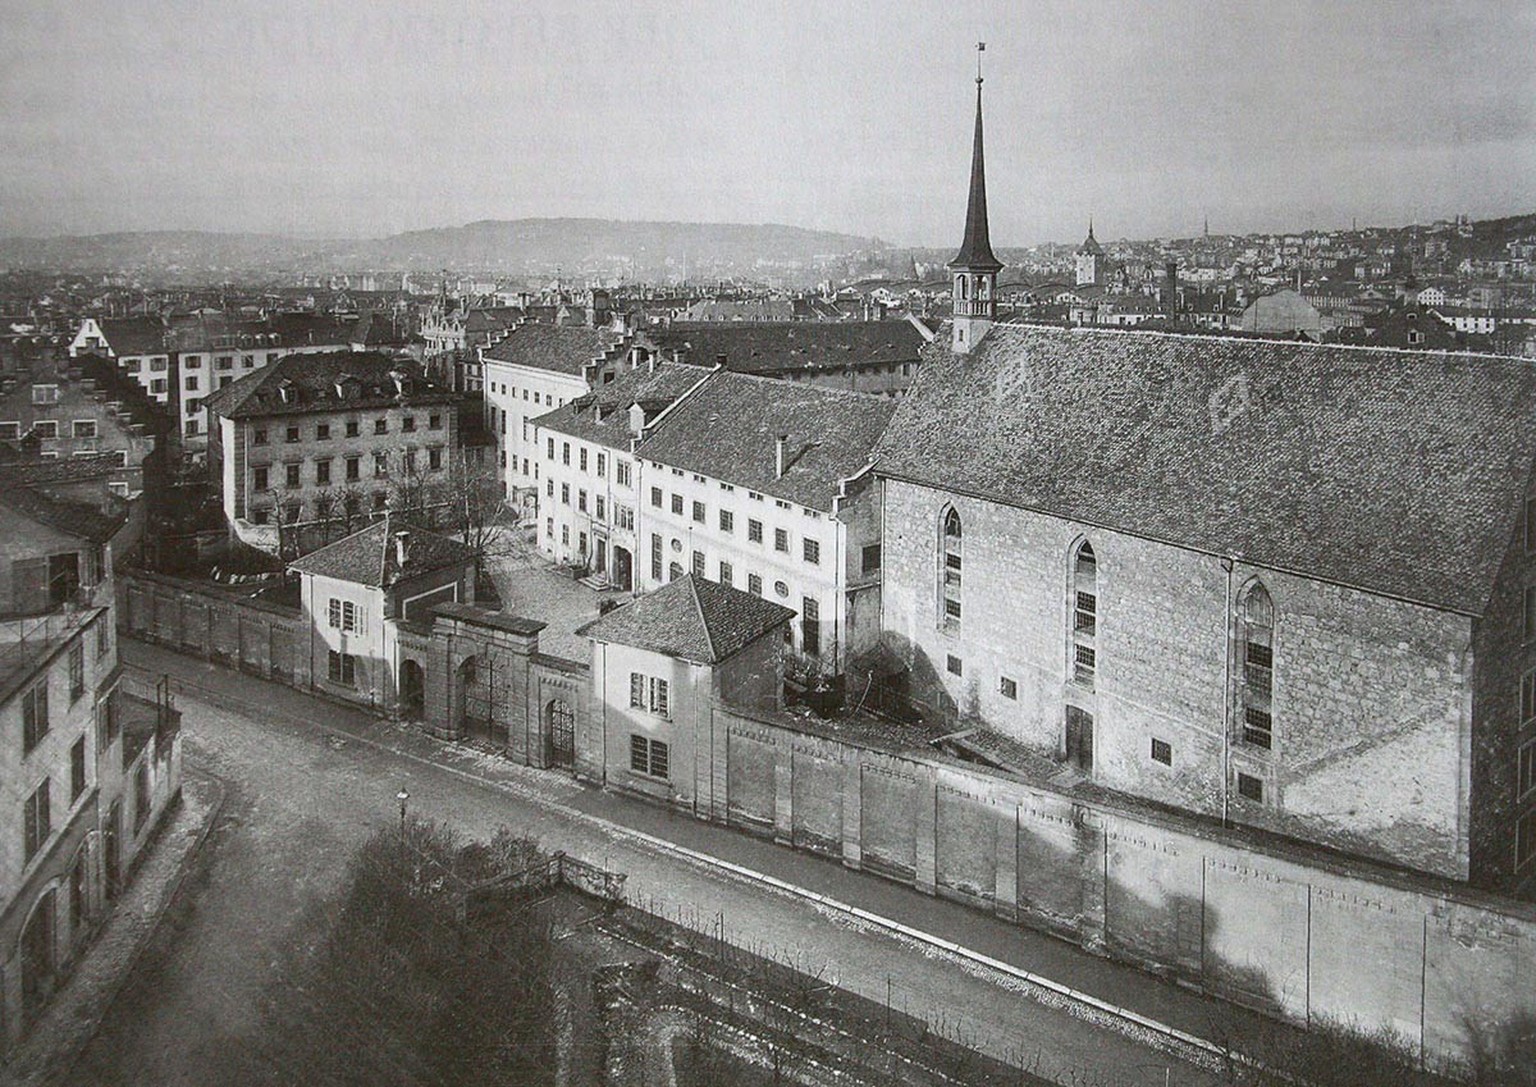 Le pénitencier d’Oetenbach à Zurich. Photo de 1900.
https://de.m.wikipedia.org/wiki/Datei:Oetenbach_Strafanstalt_1900.jpg